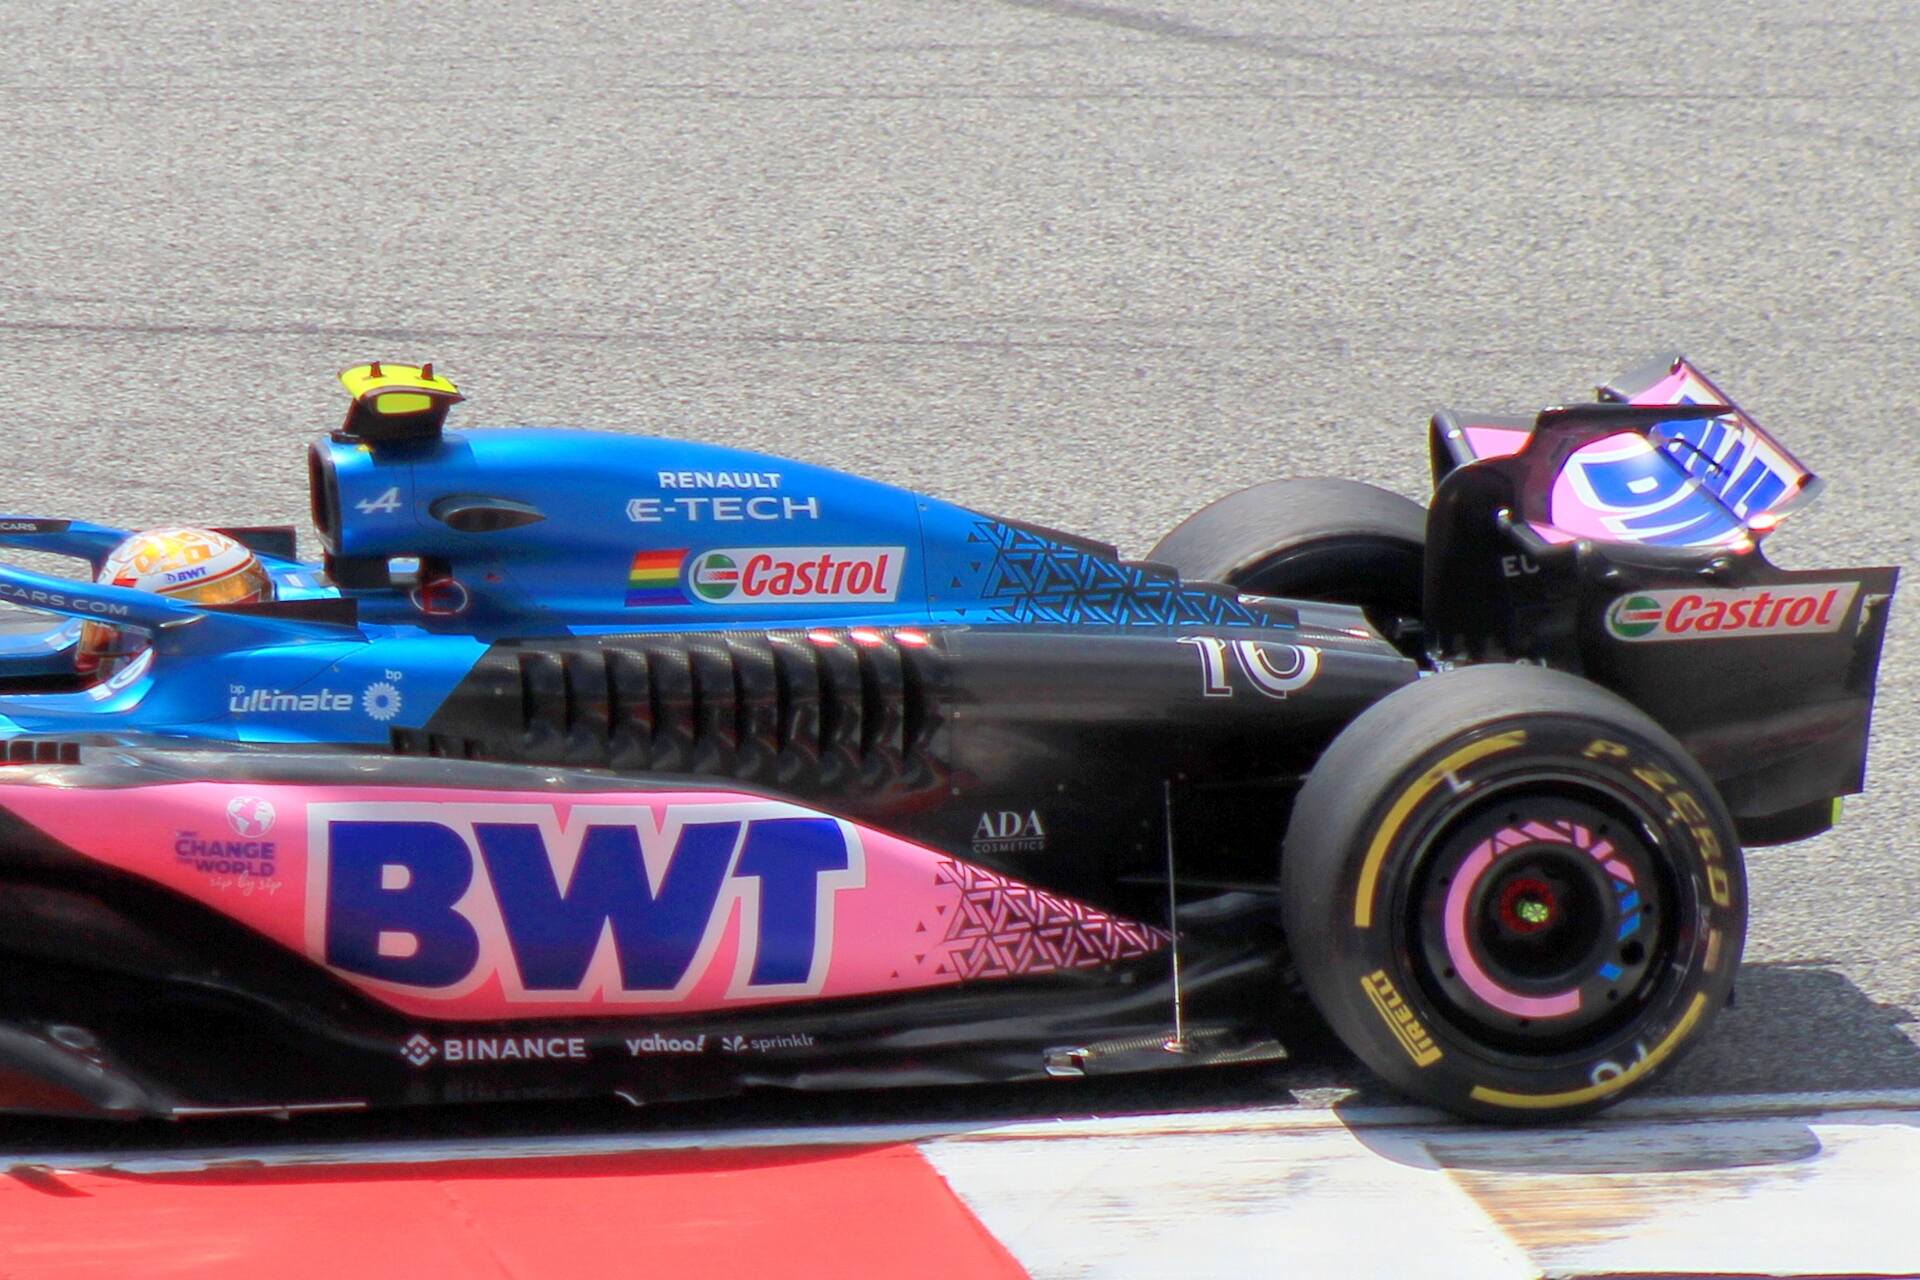 BWT Alpine F1 командасы: 2000-жылдан бери Castrol бренди bp тобунун бир бөлүгү болгон, бирок Формула 1де да өзүнчө өзгөчөлүгүн сактап келет.